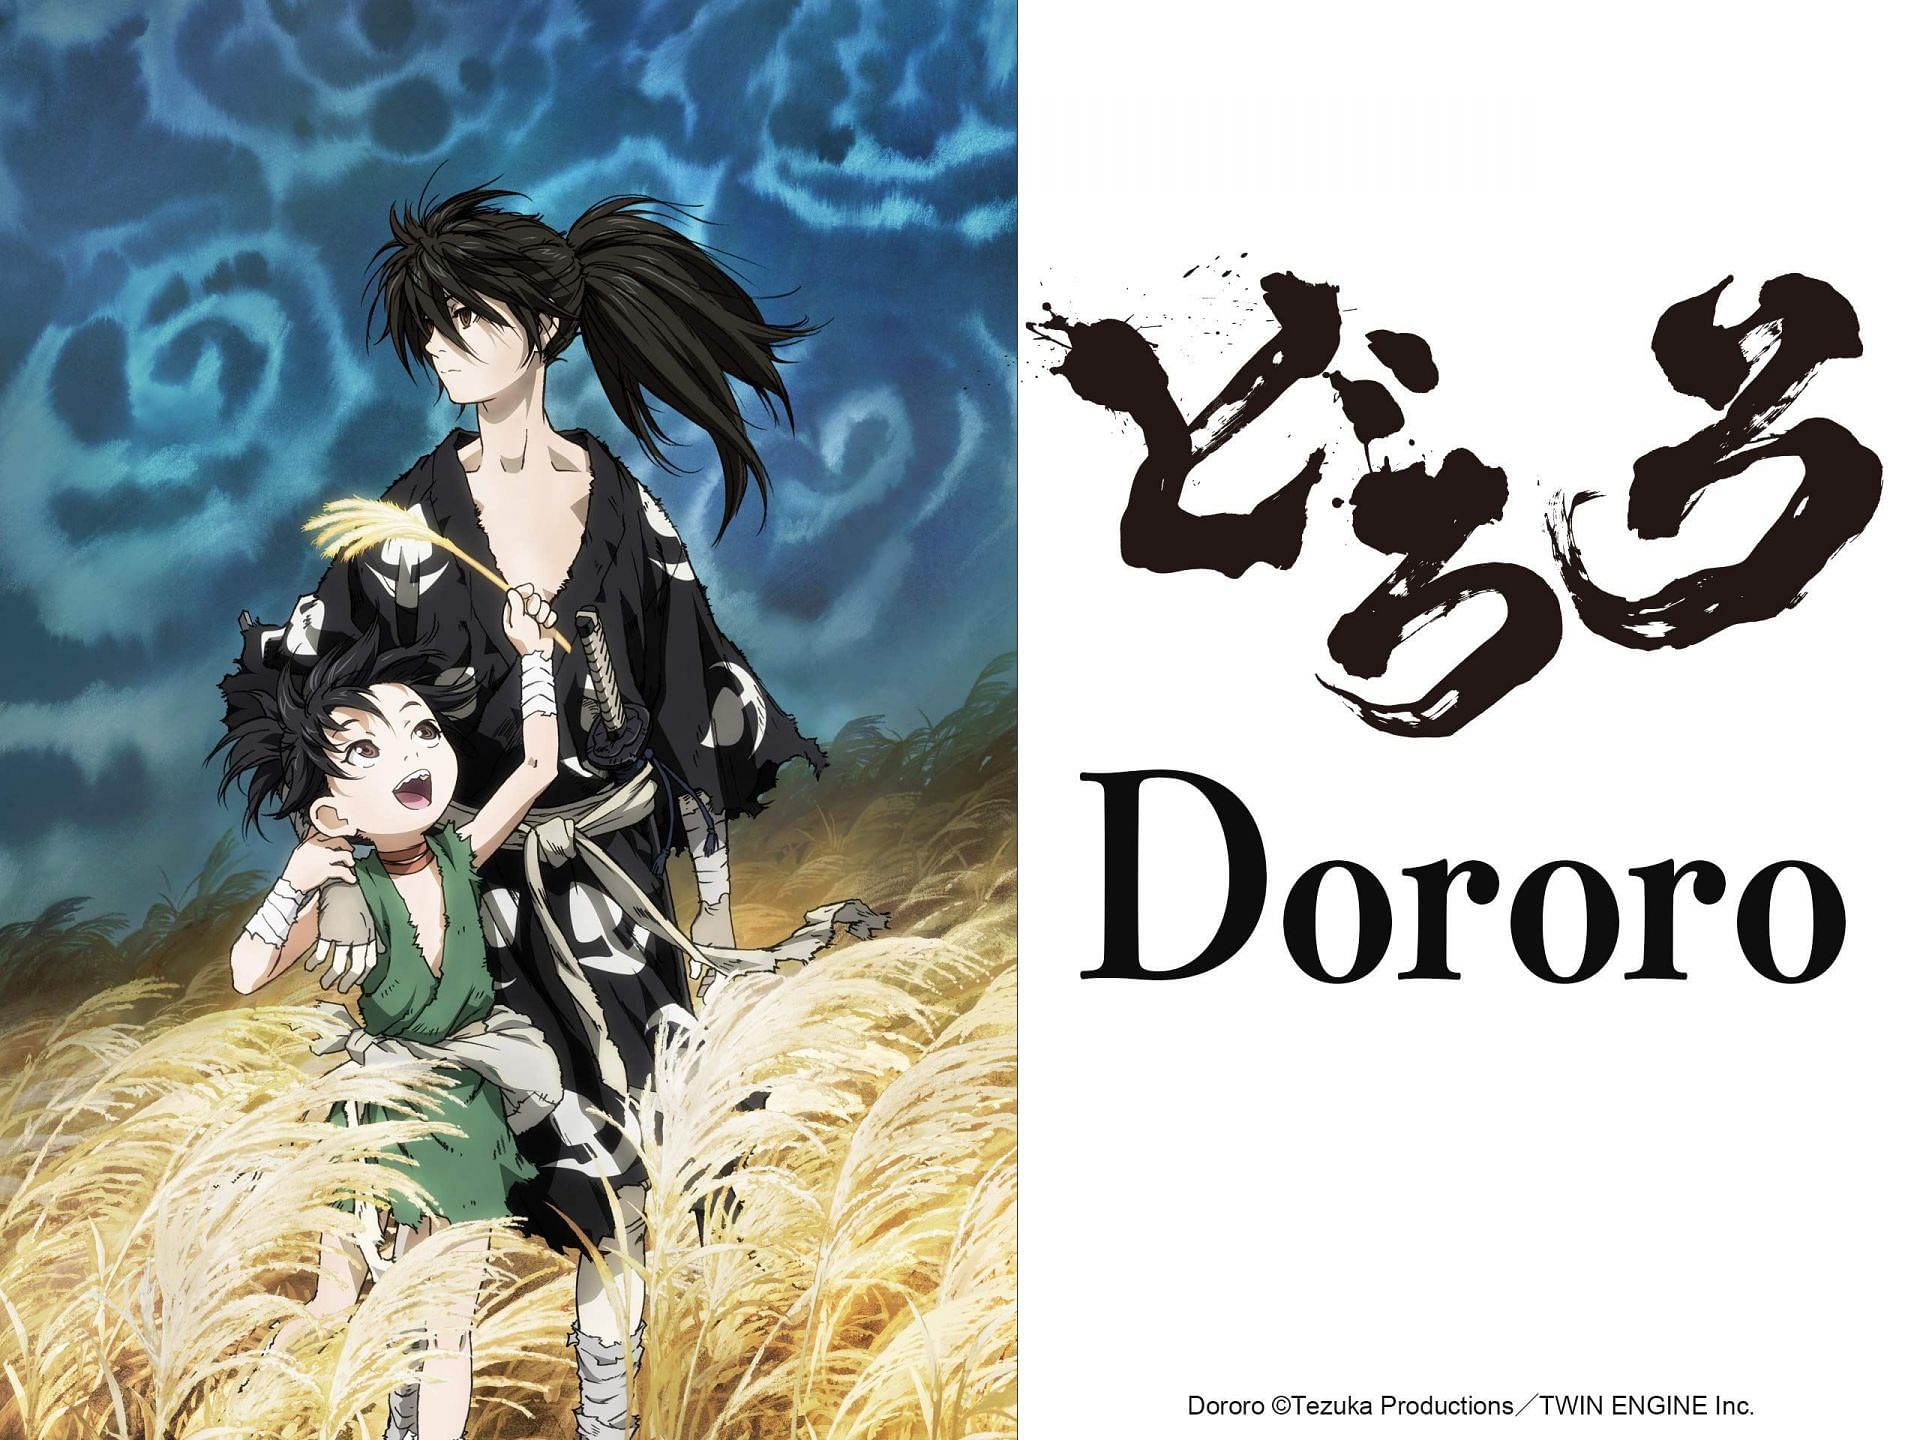 Dororo (Image via Tezuka Product and Studio MAPPA)